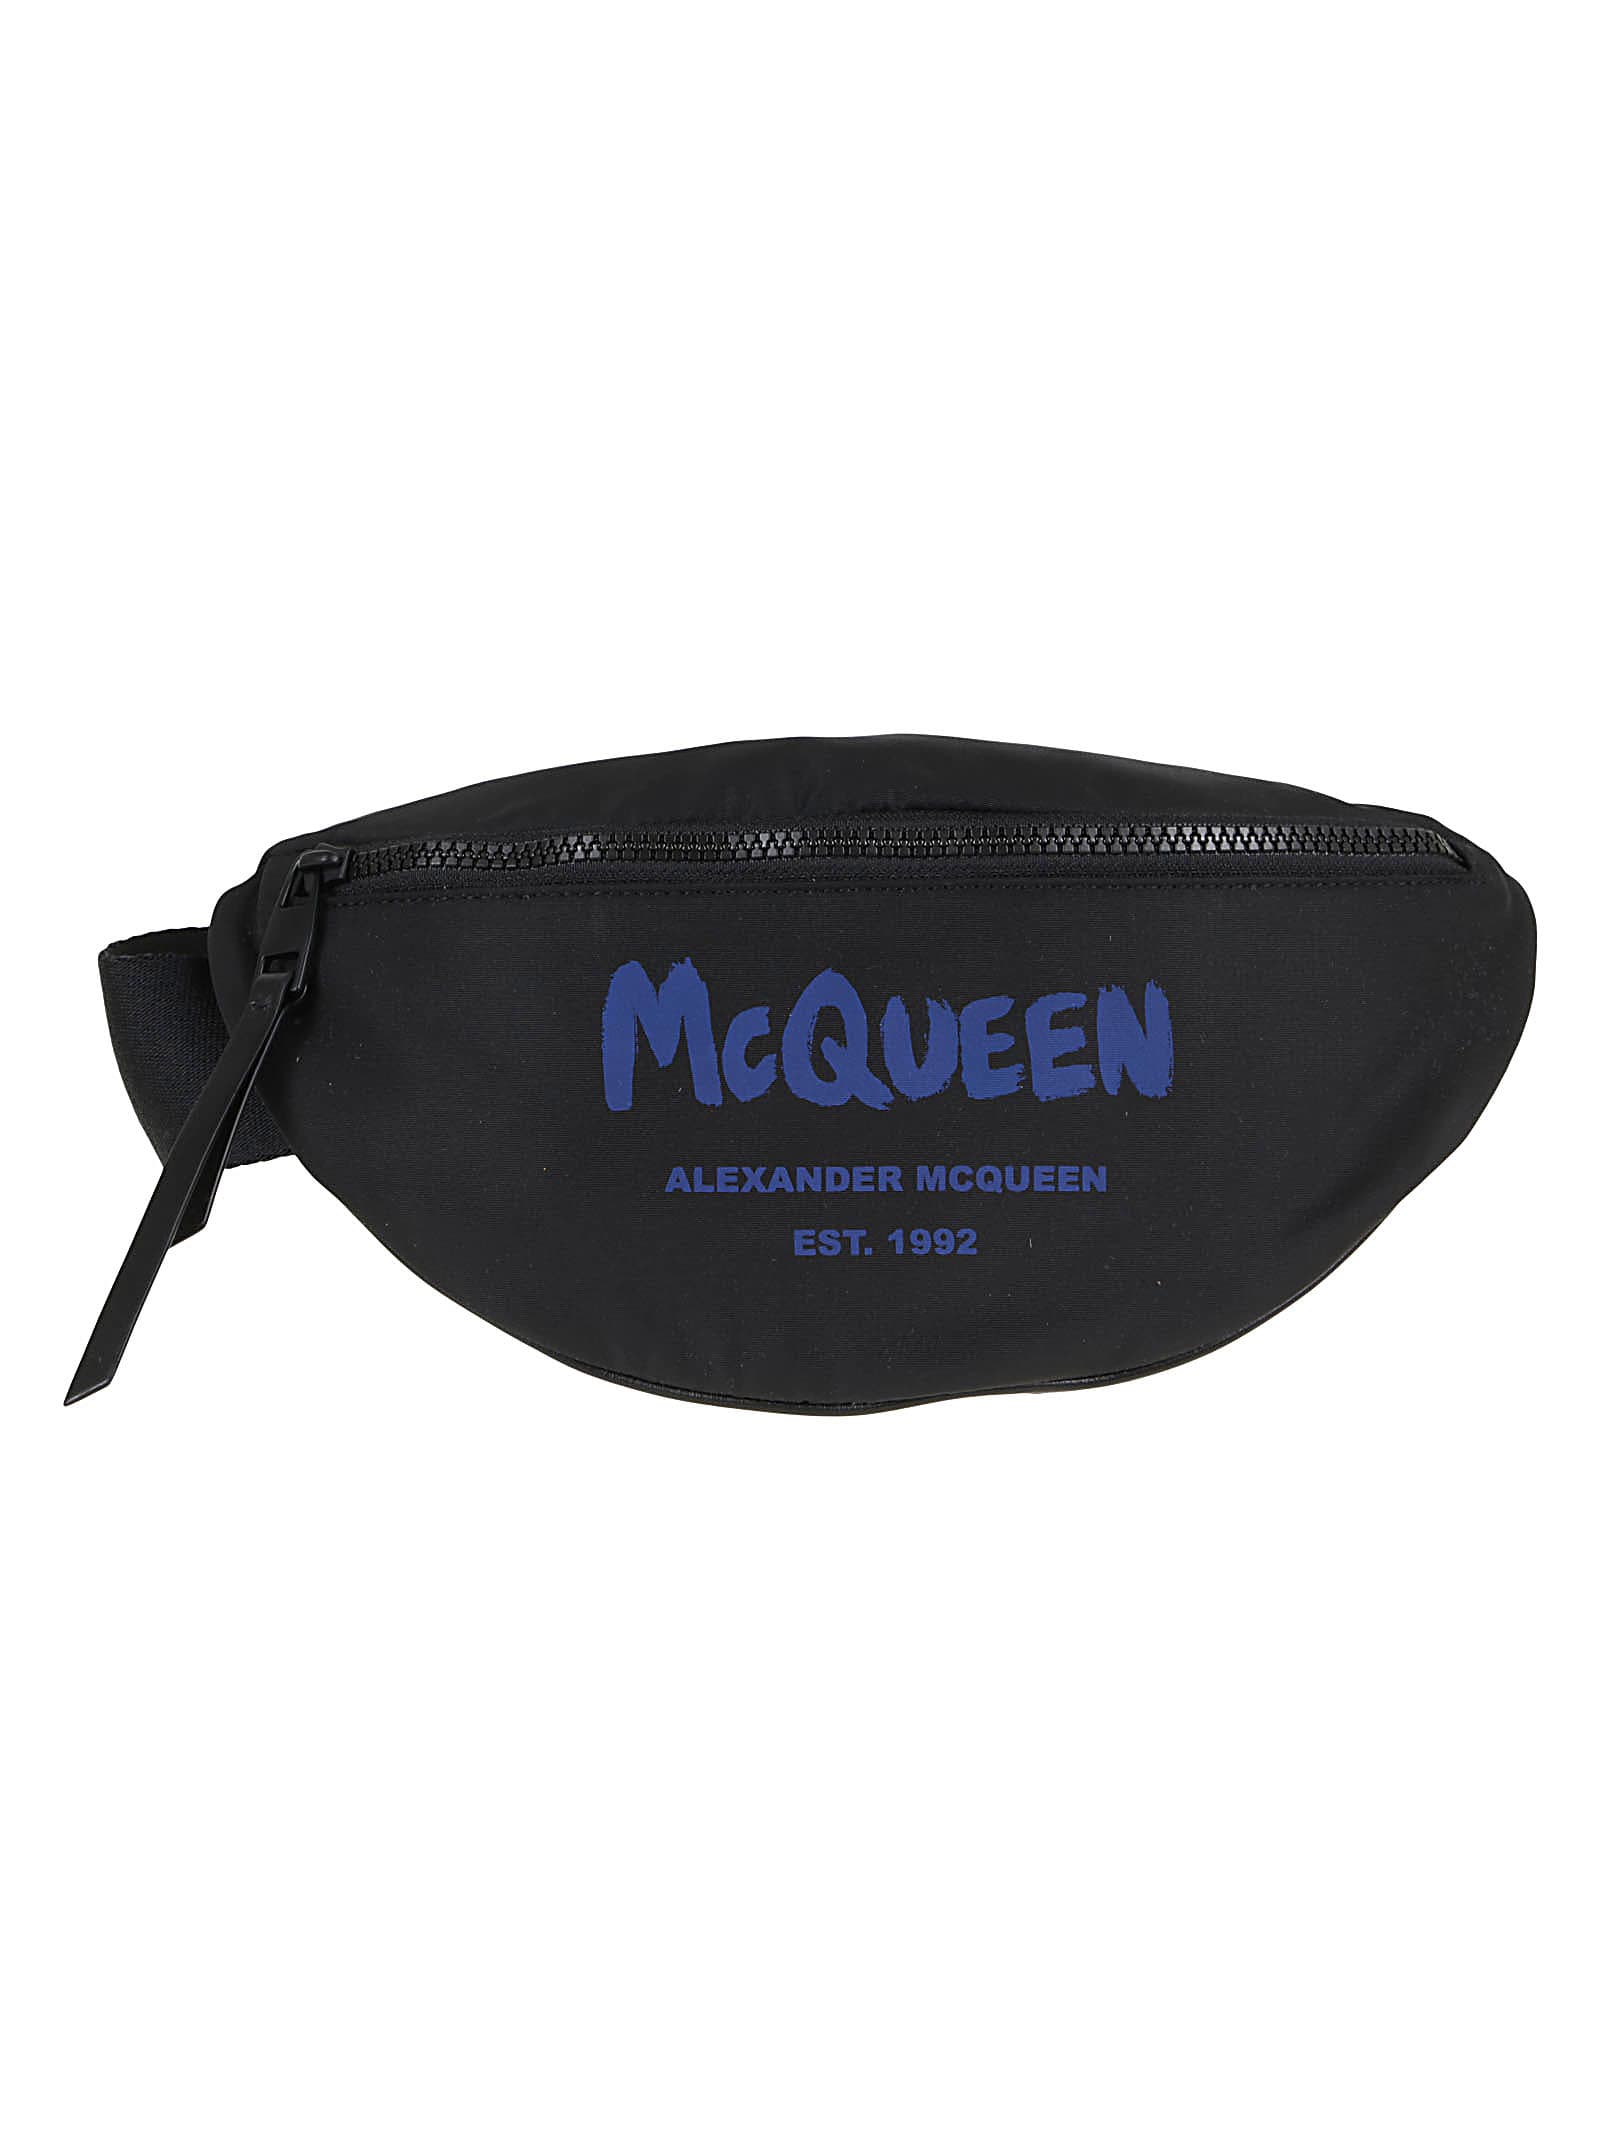 Alexander McQueen Belt Bag